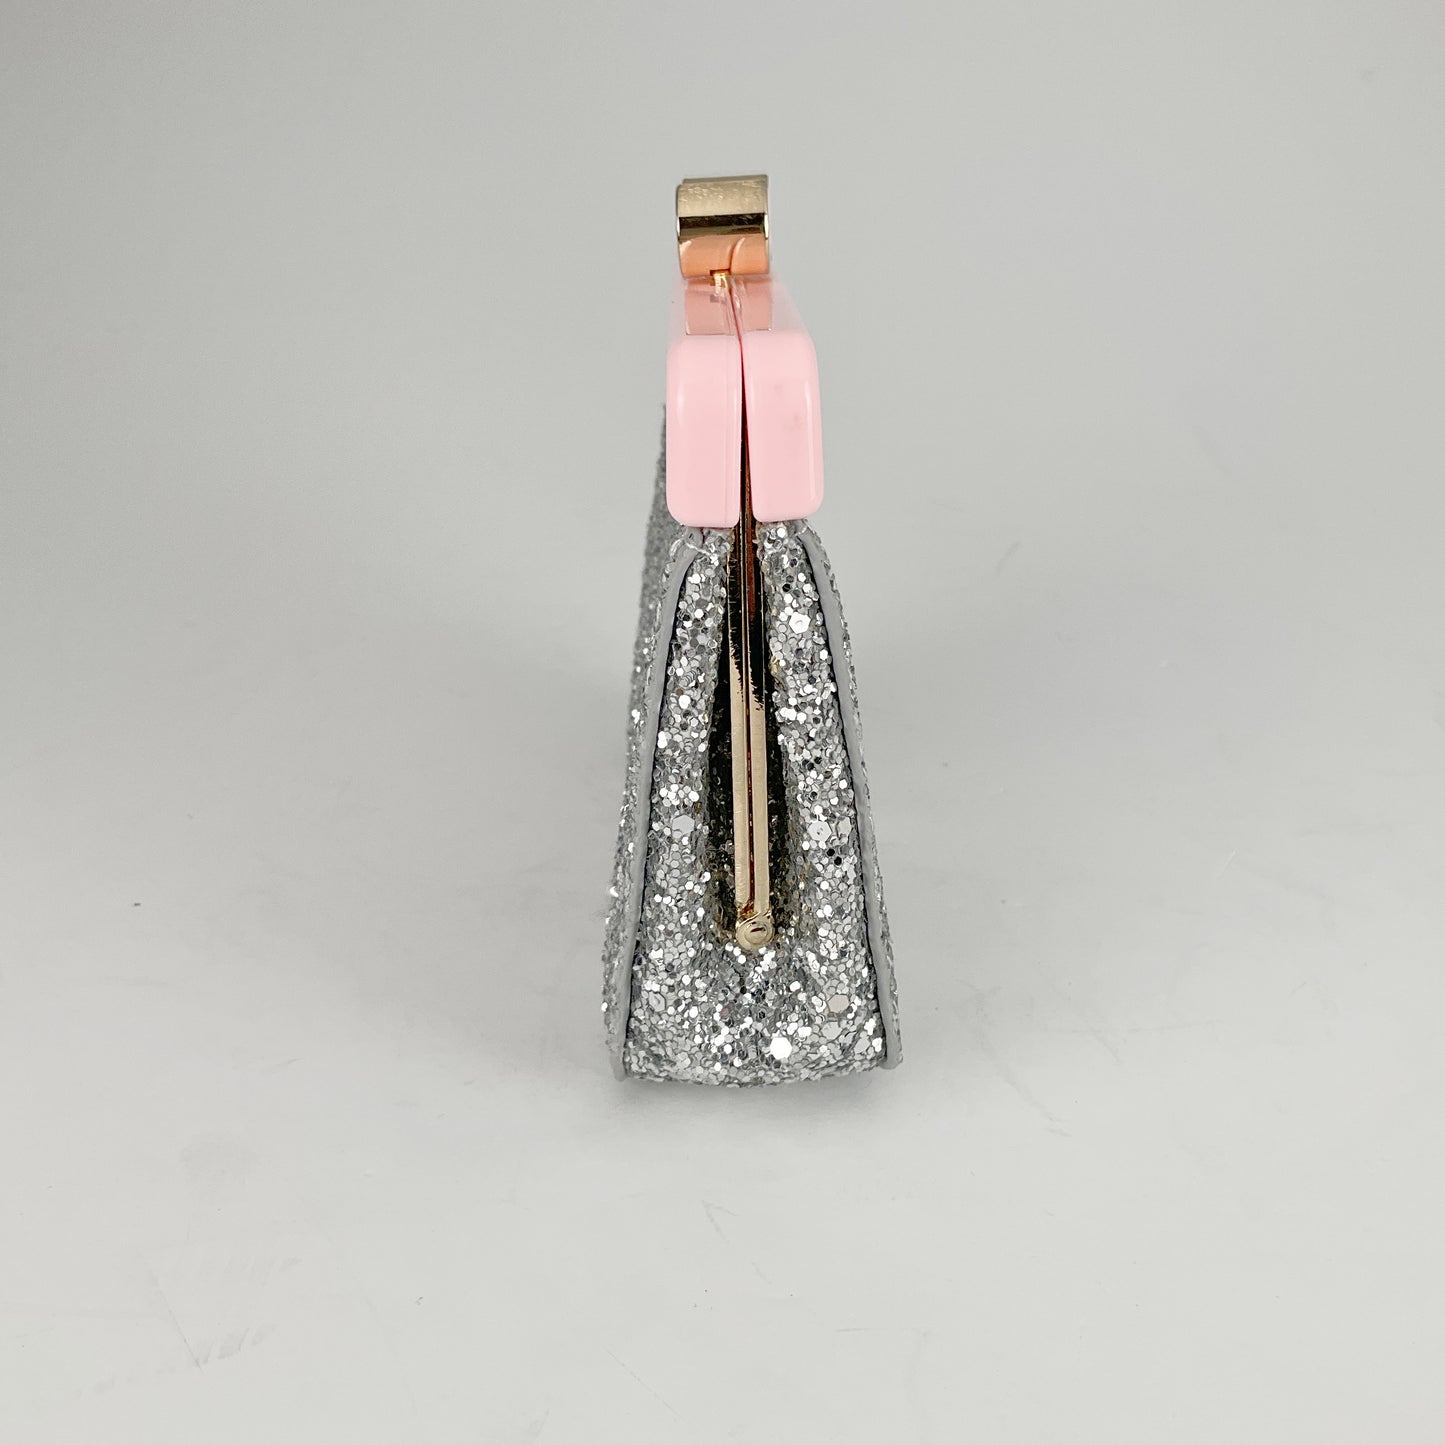 MIU MIU - Glitter Small Clutch Bag